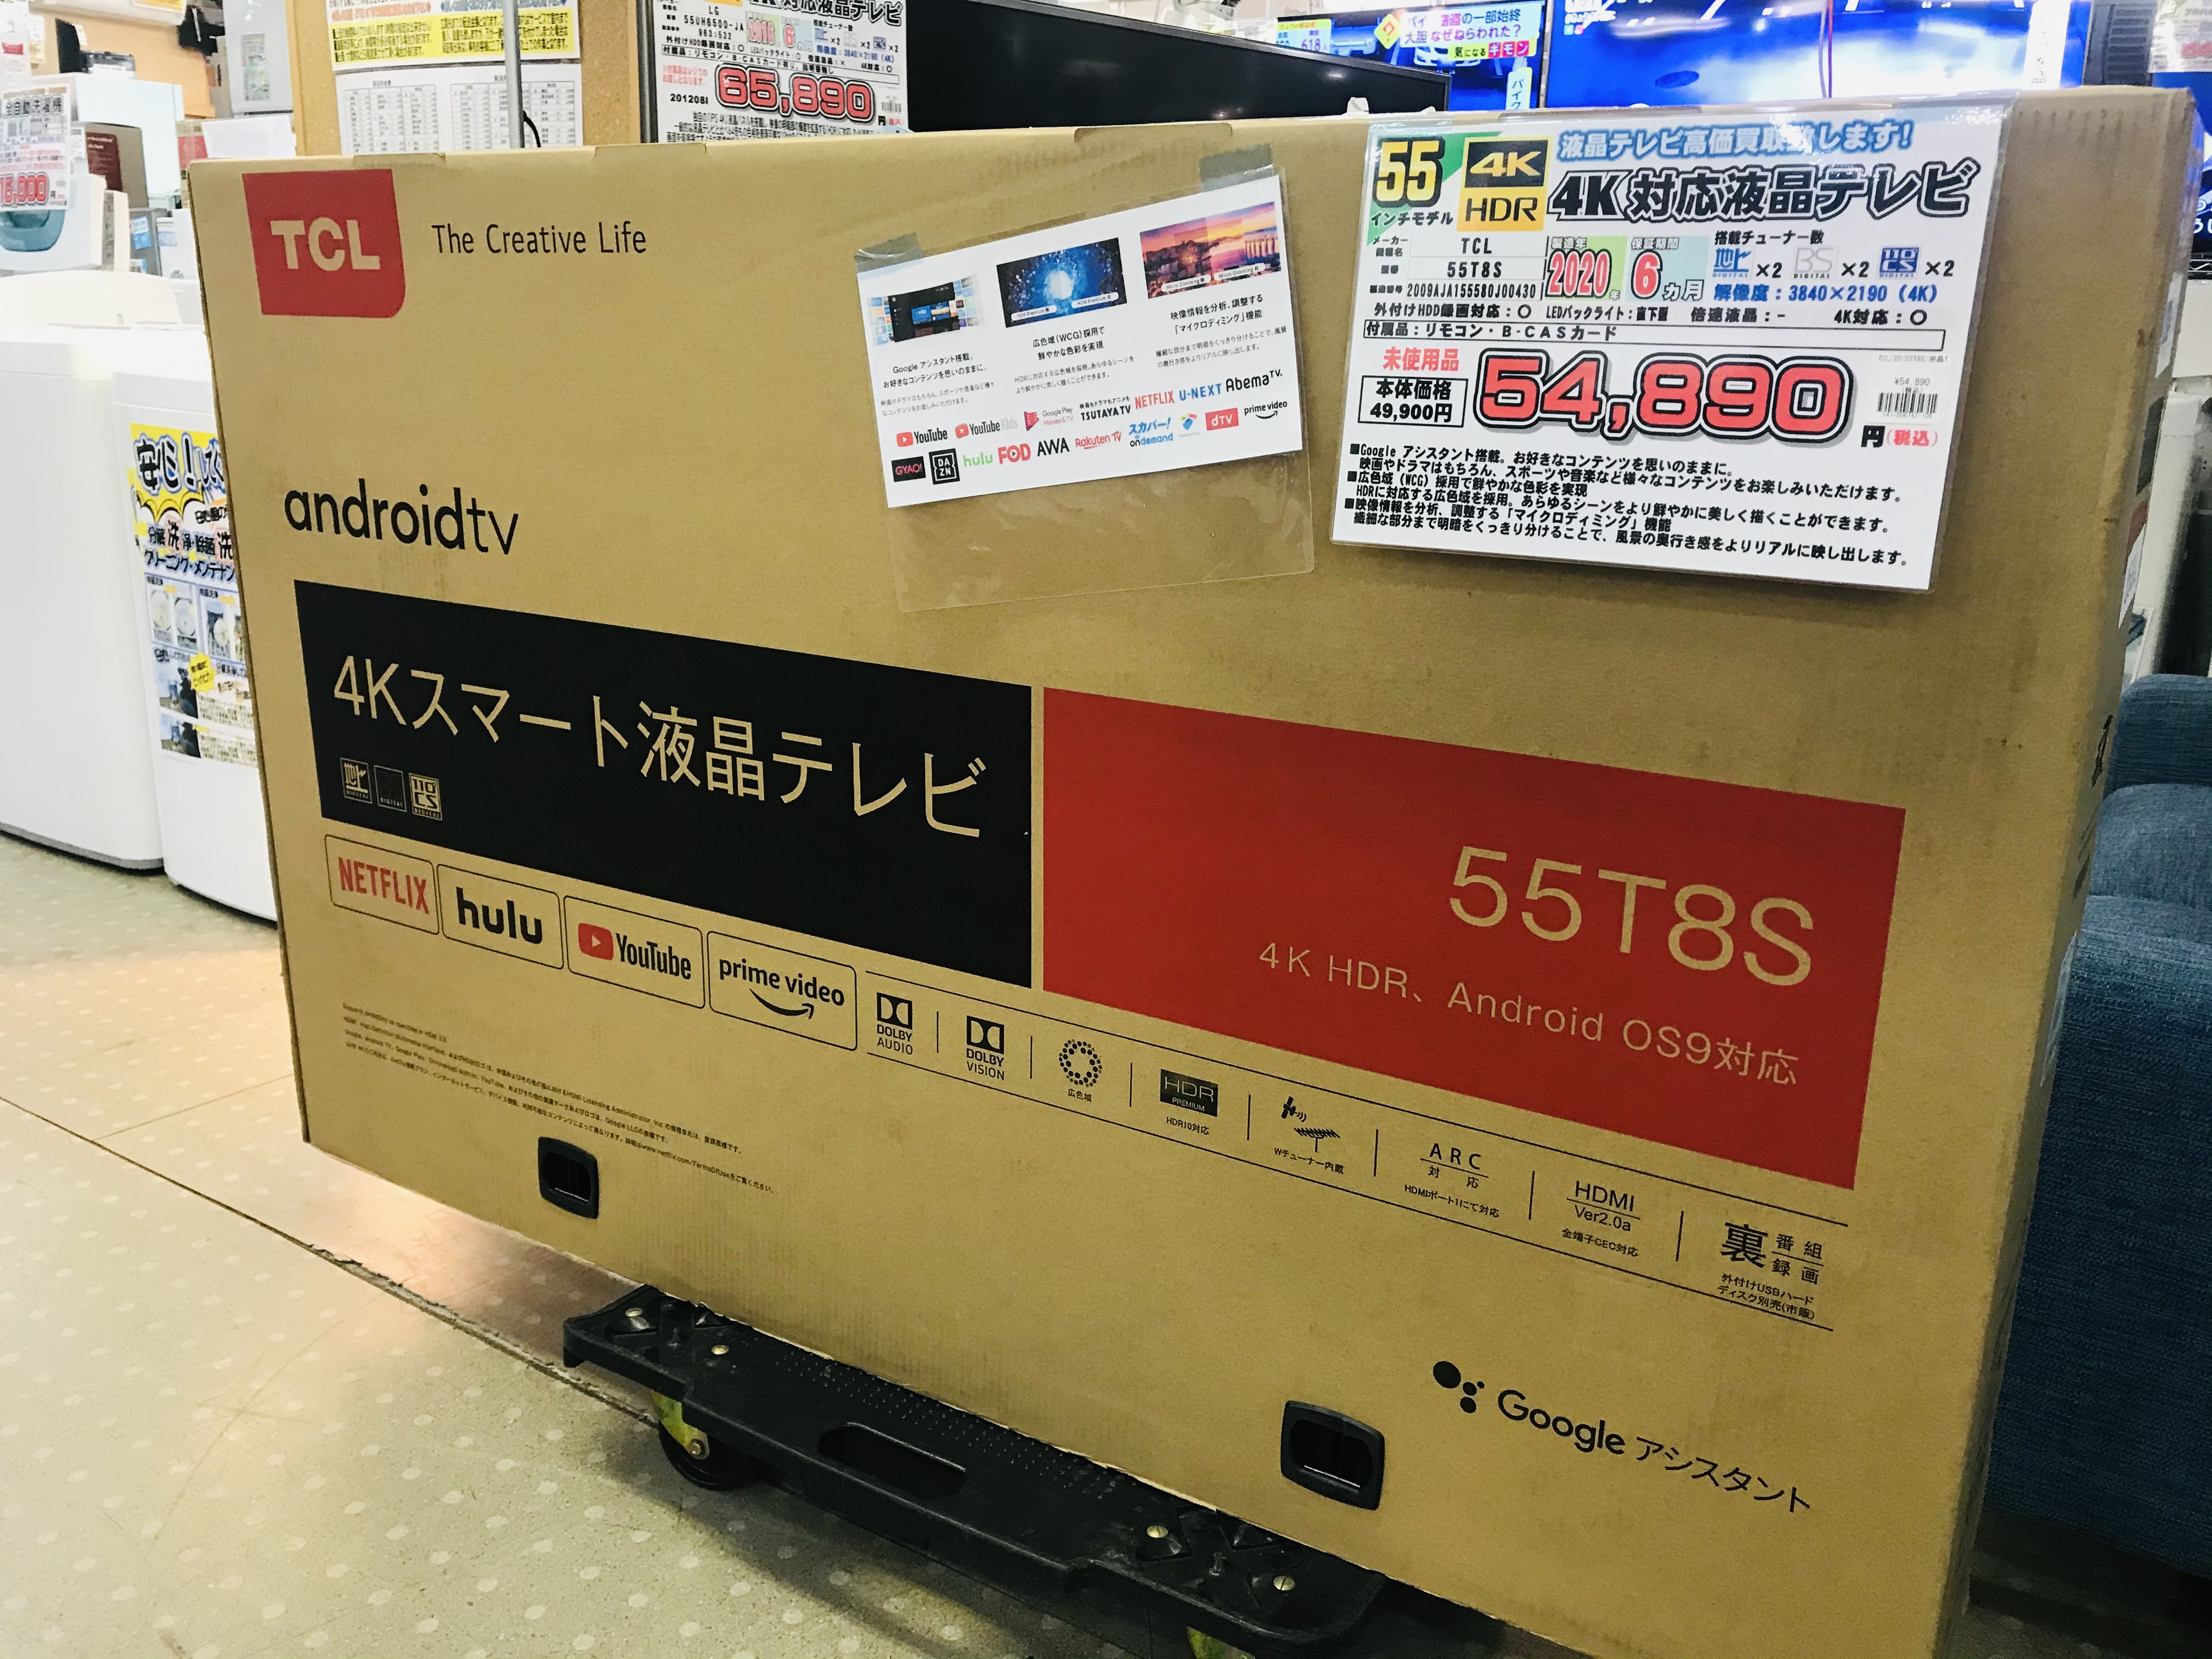 TCL 55V型 4K対応 液晶テレビ スマートテレビ(Android TV) 55P8S買取致しました|愛品館千葉店 | リサイクルショップ  中古品の買取は愛品倶楽部・愛品館